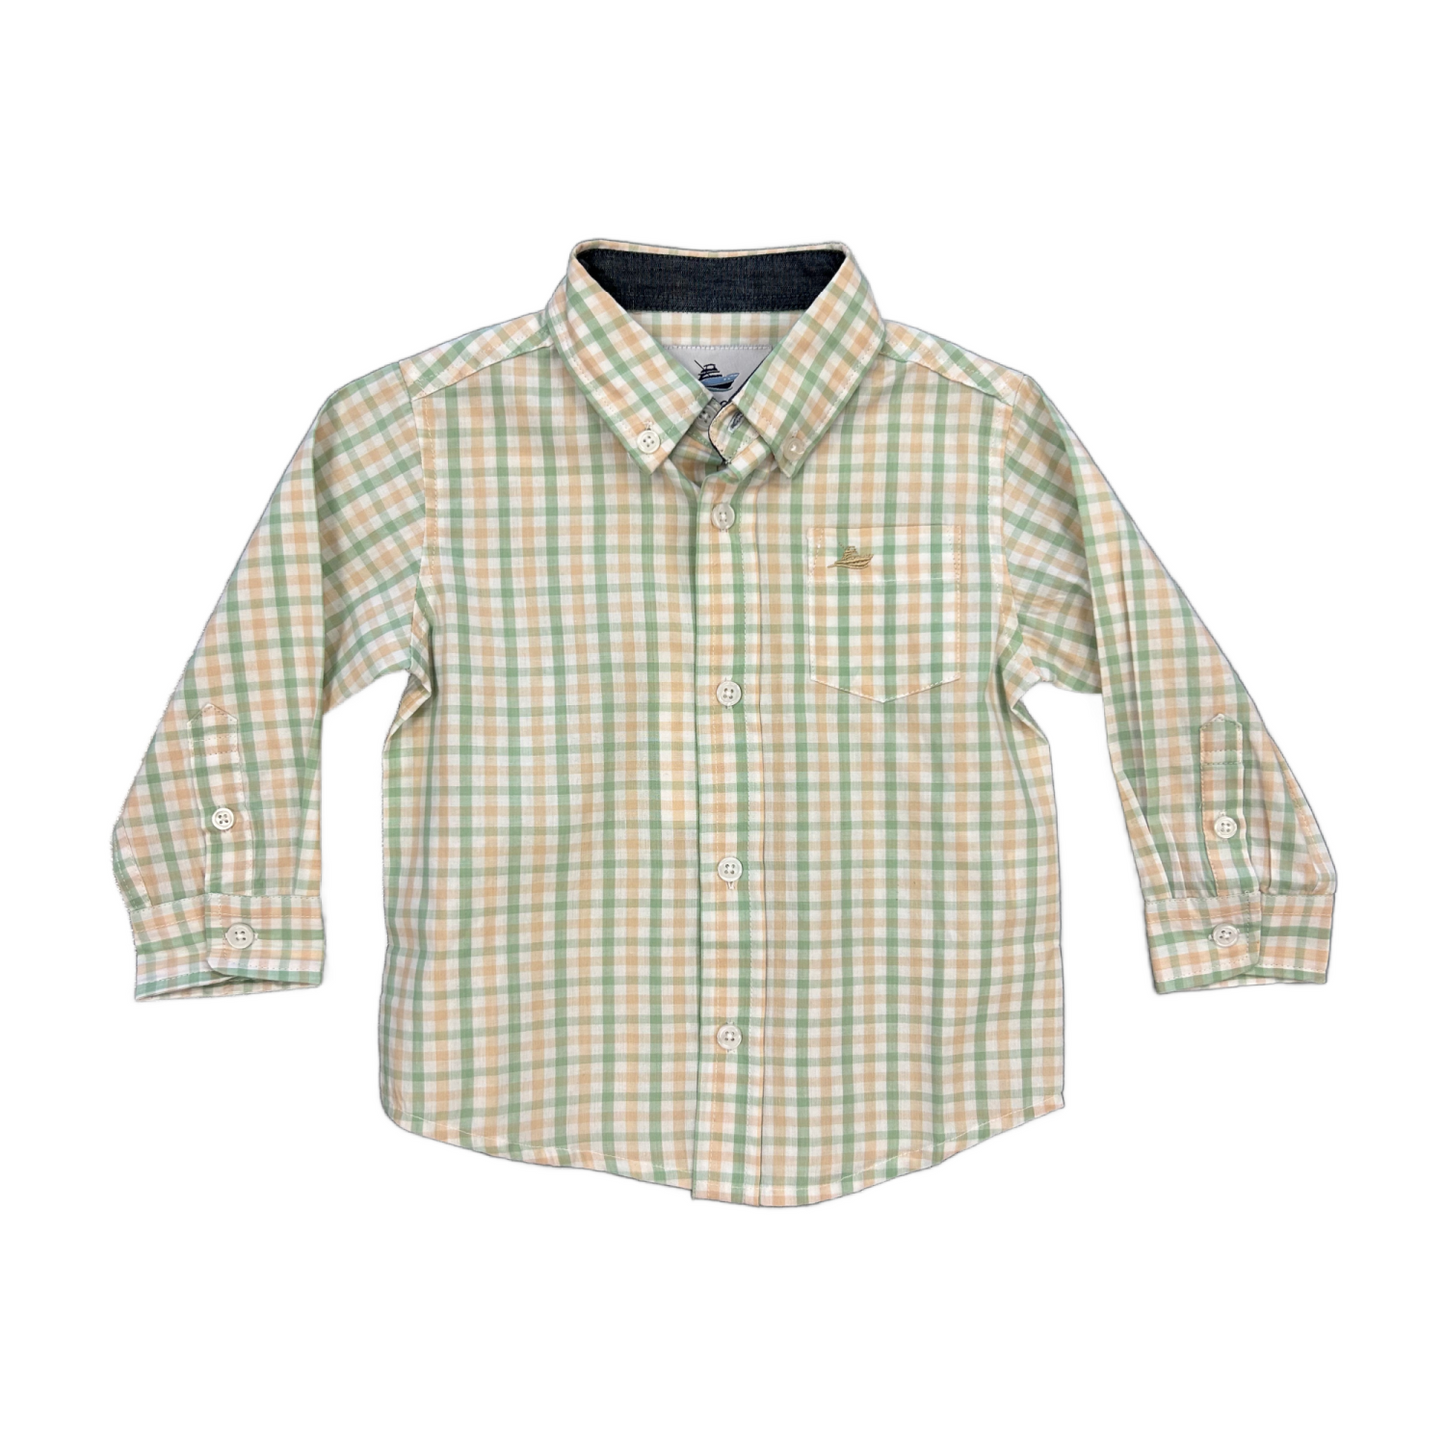 Green & Khaki Plaid Dress Shirt